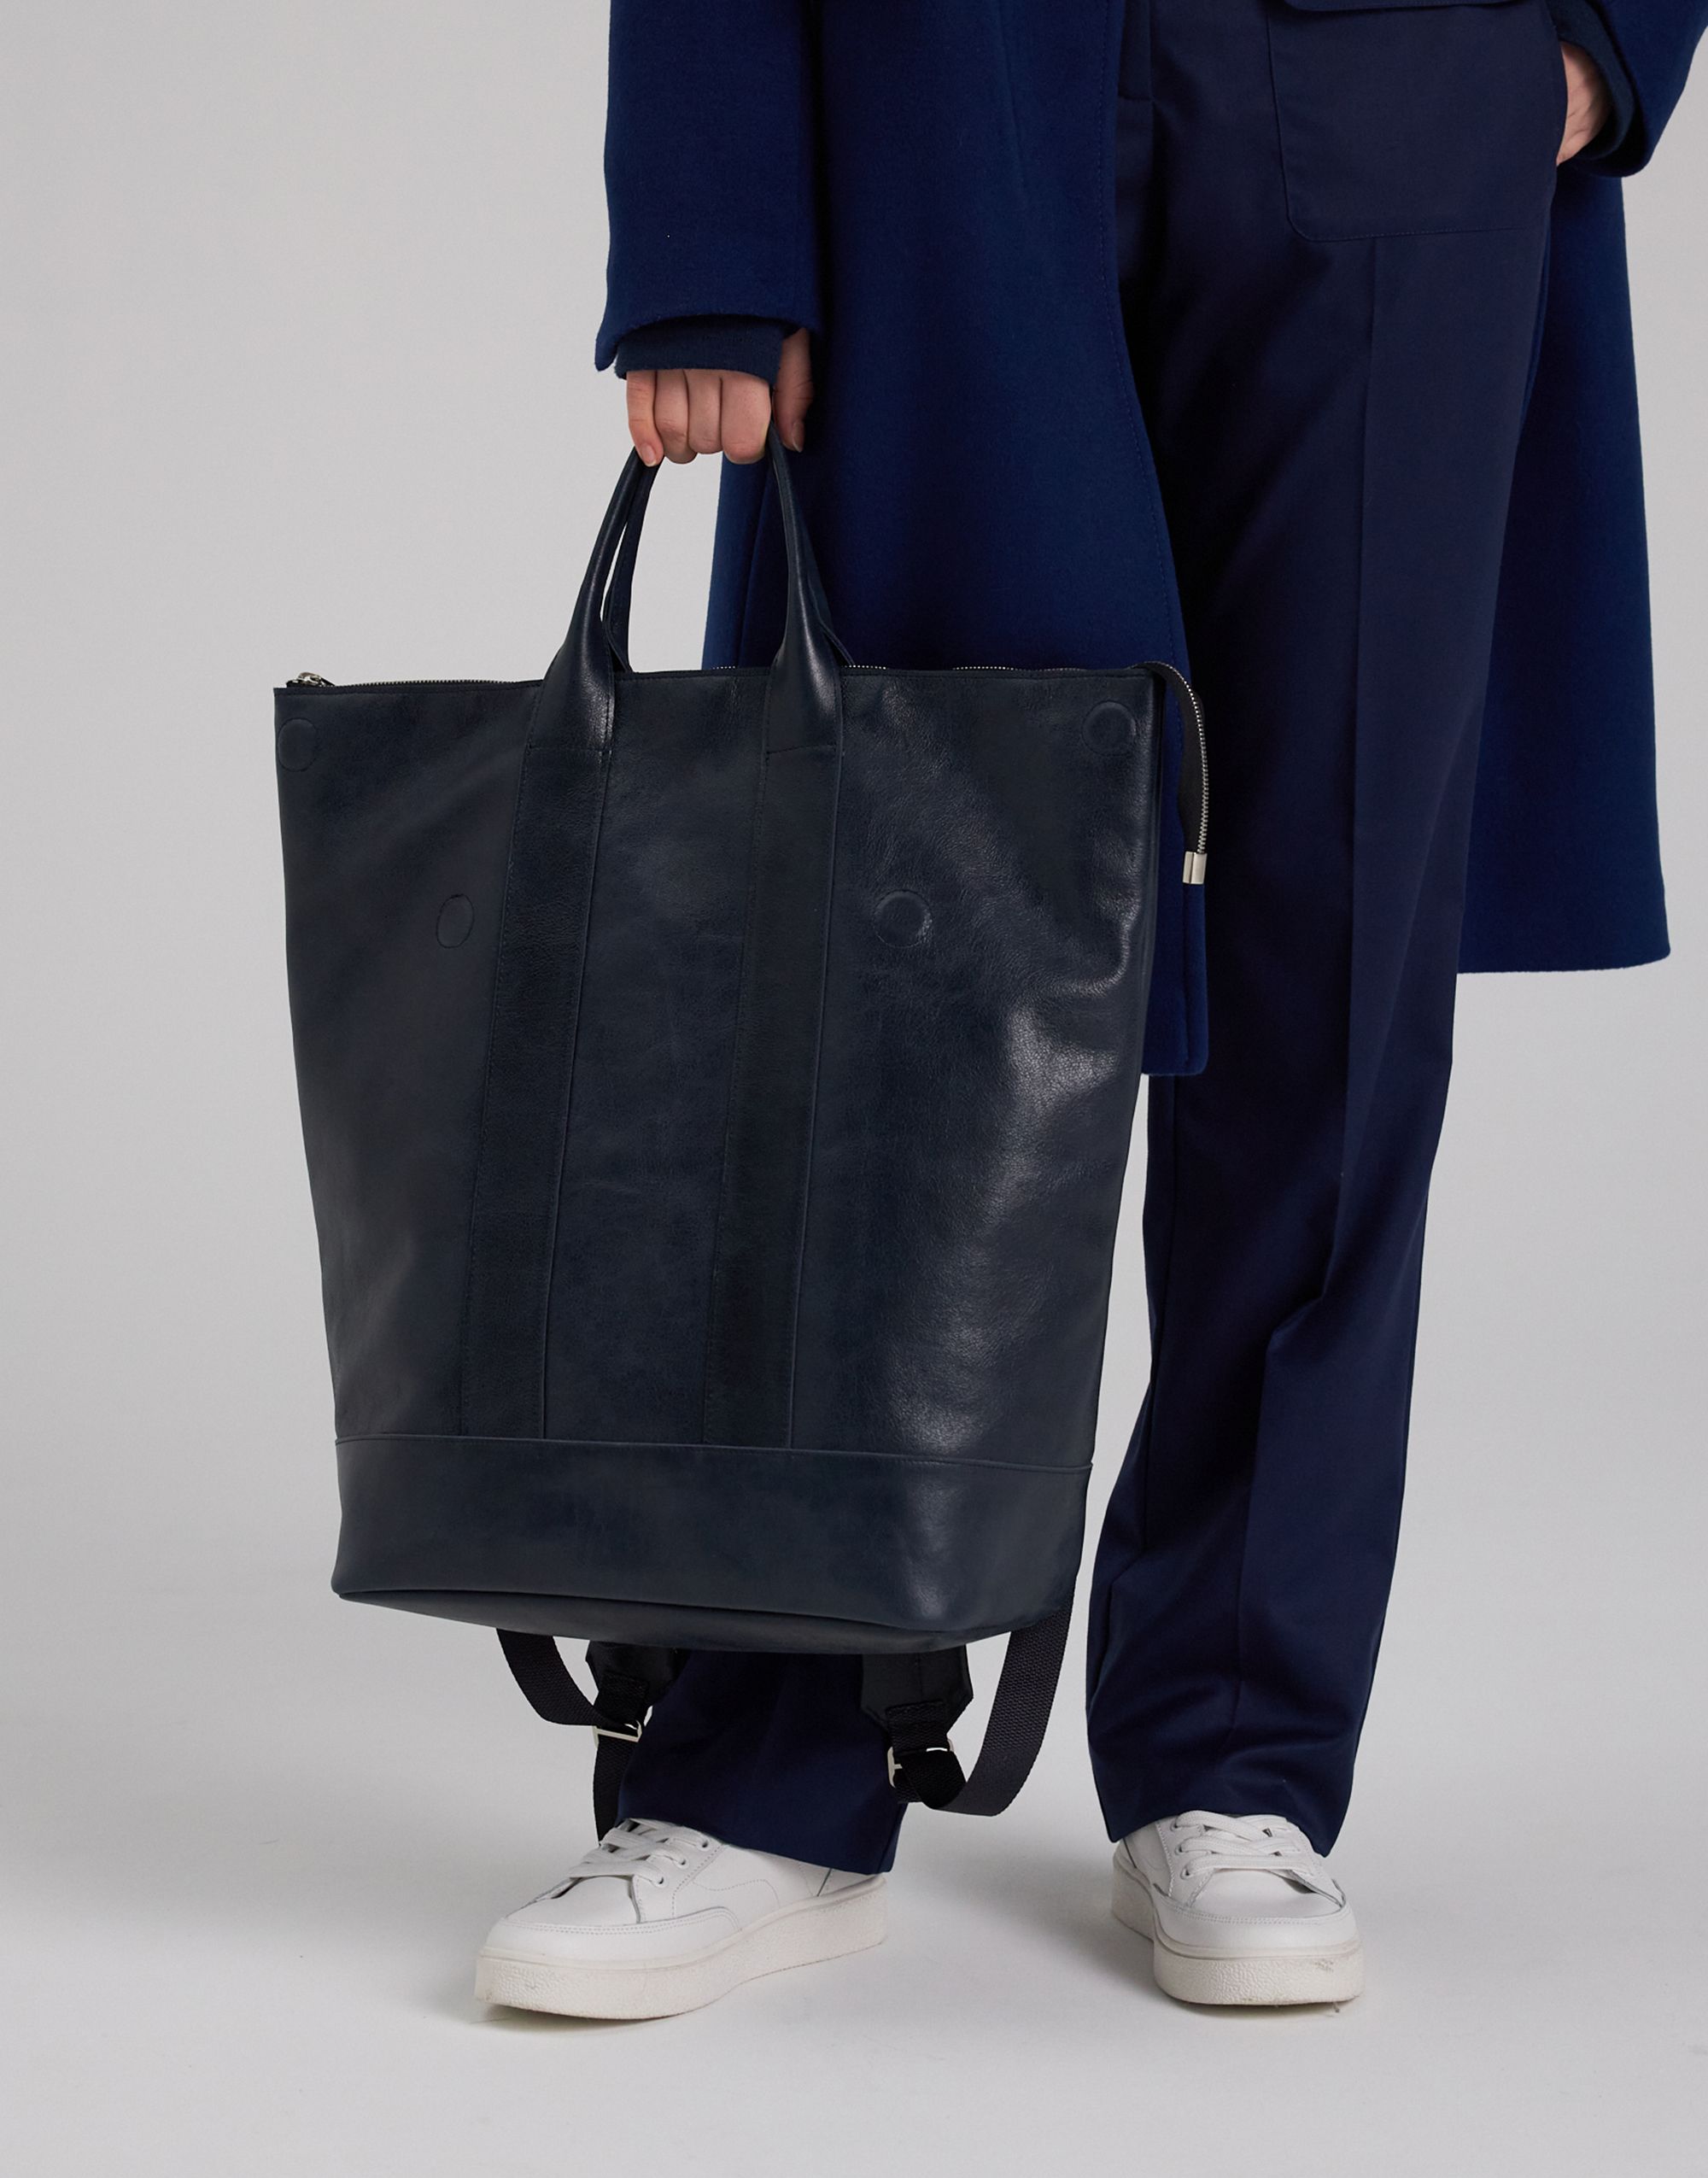 Как сшить большую прочную сумку с карманами без выкройки: мастер-класс